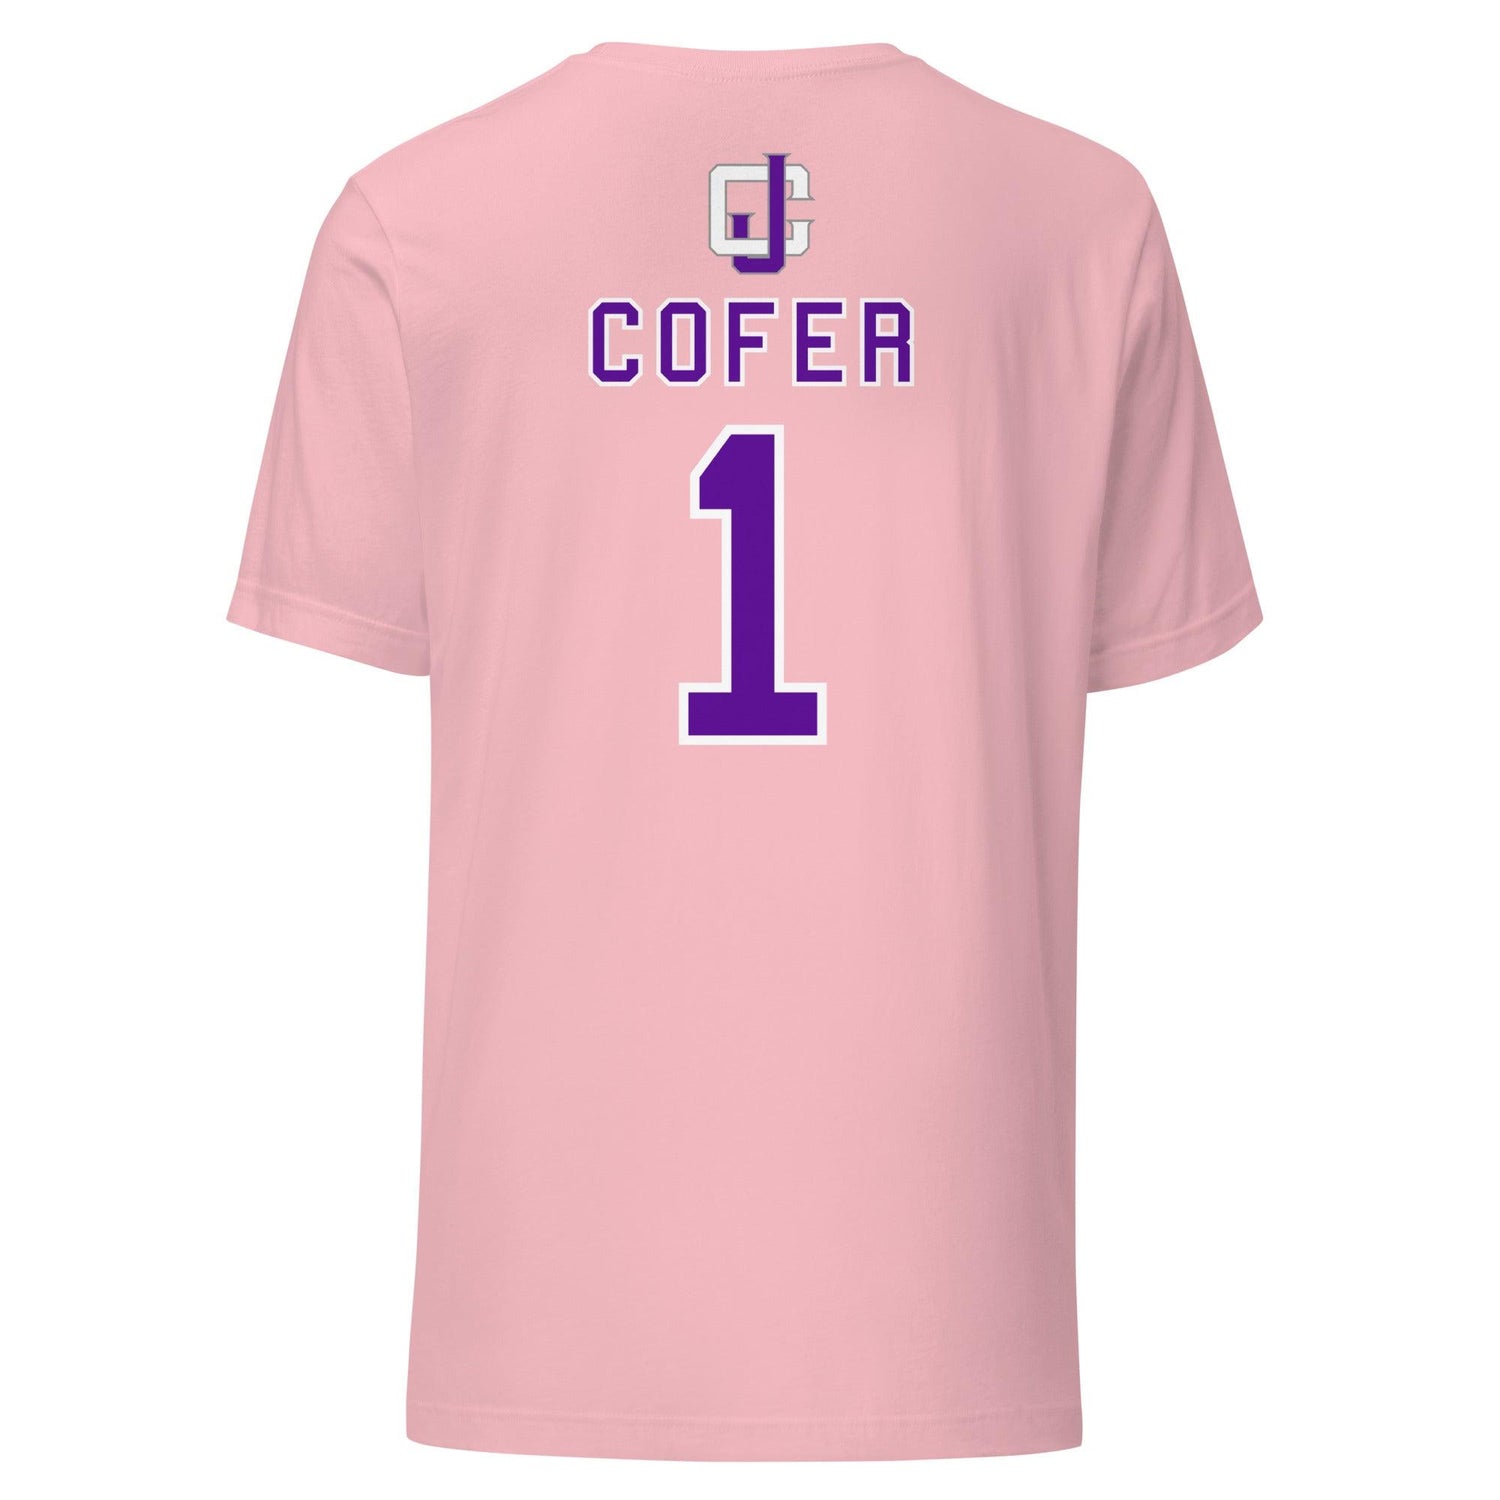 Jayven Cofer "Jersey" t-shirt - Fan Arch